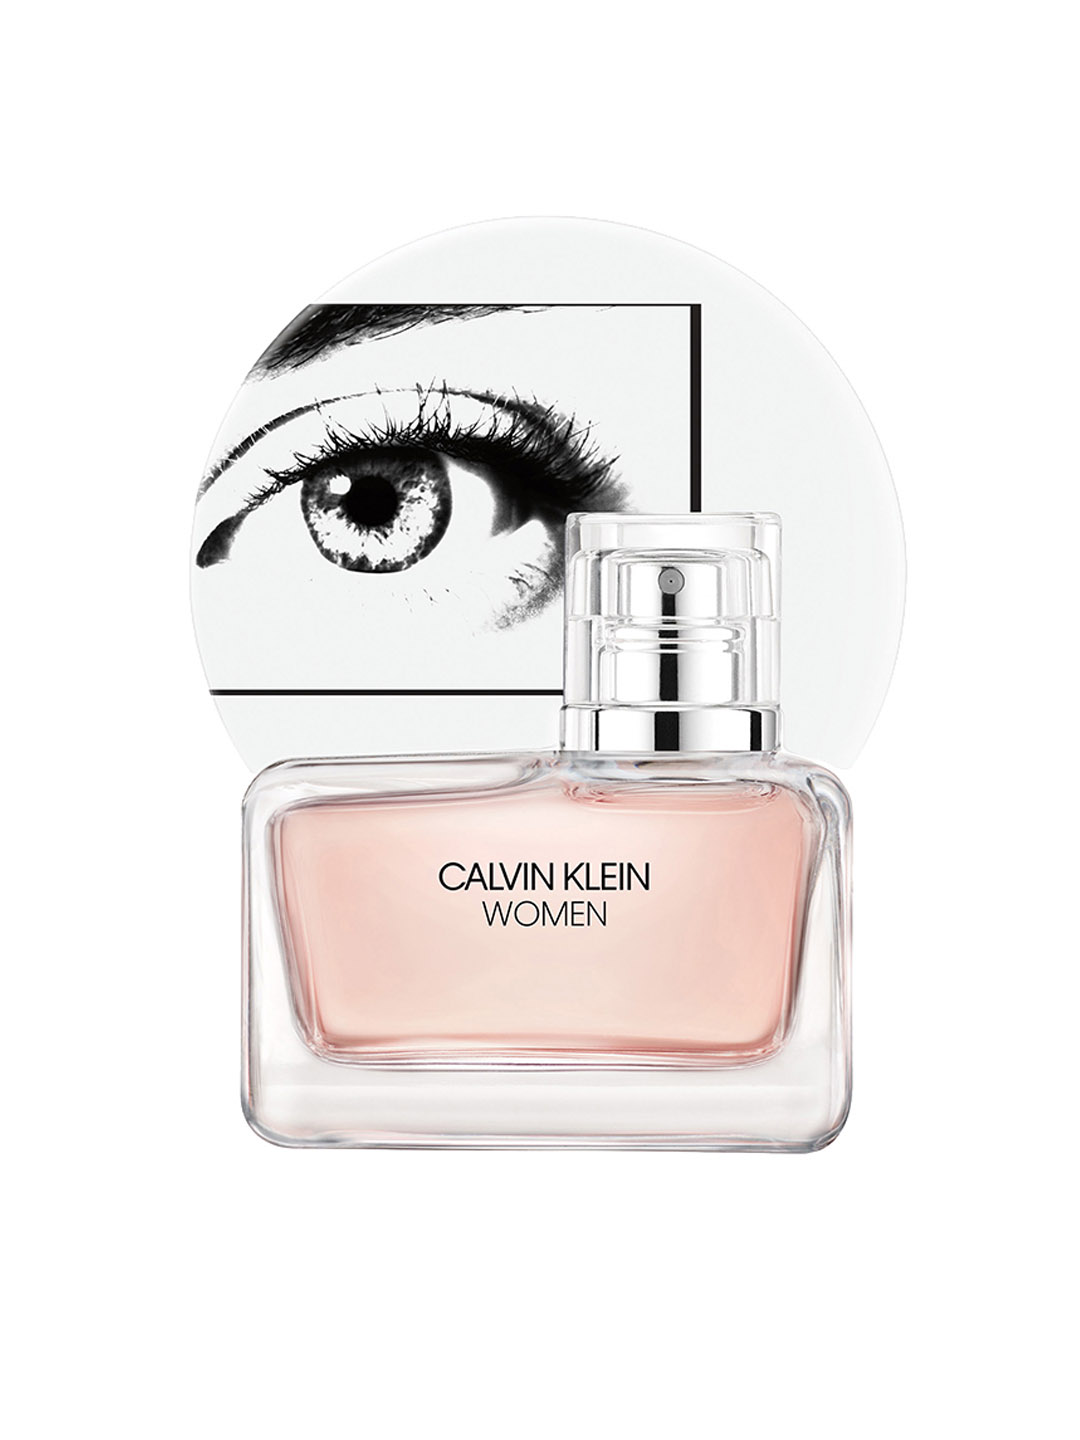 Calvin Klein Women Eau De Parfum 30ml Price in India